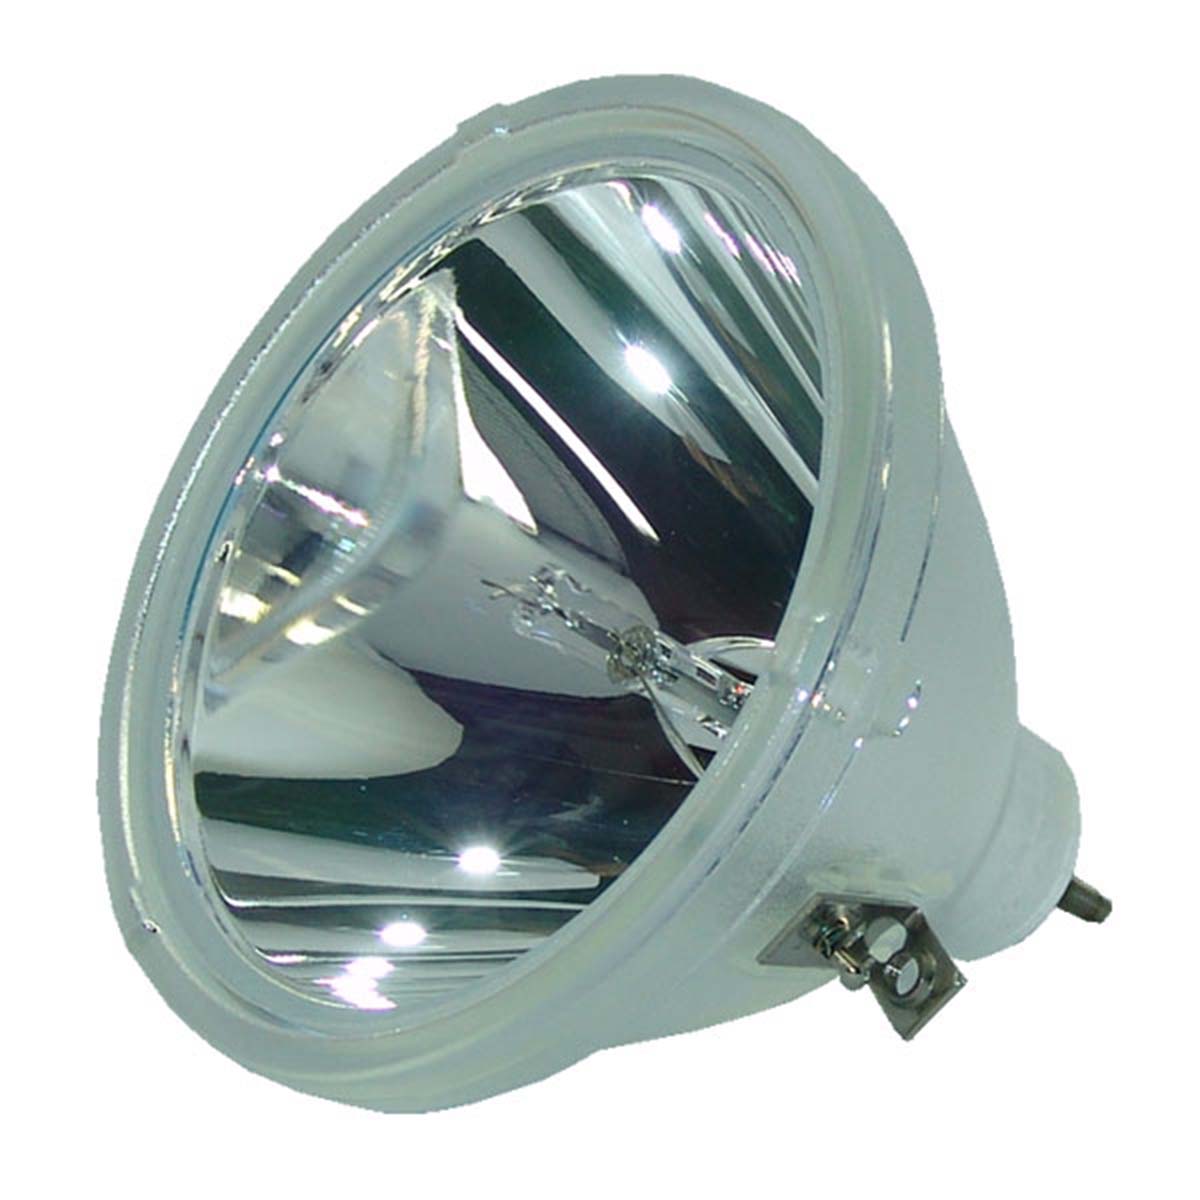 Mitsubishi S-FD10LA Osram Projector Bare Lamp